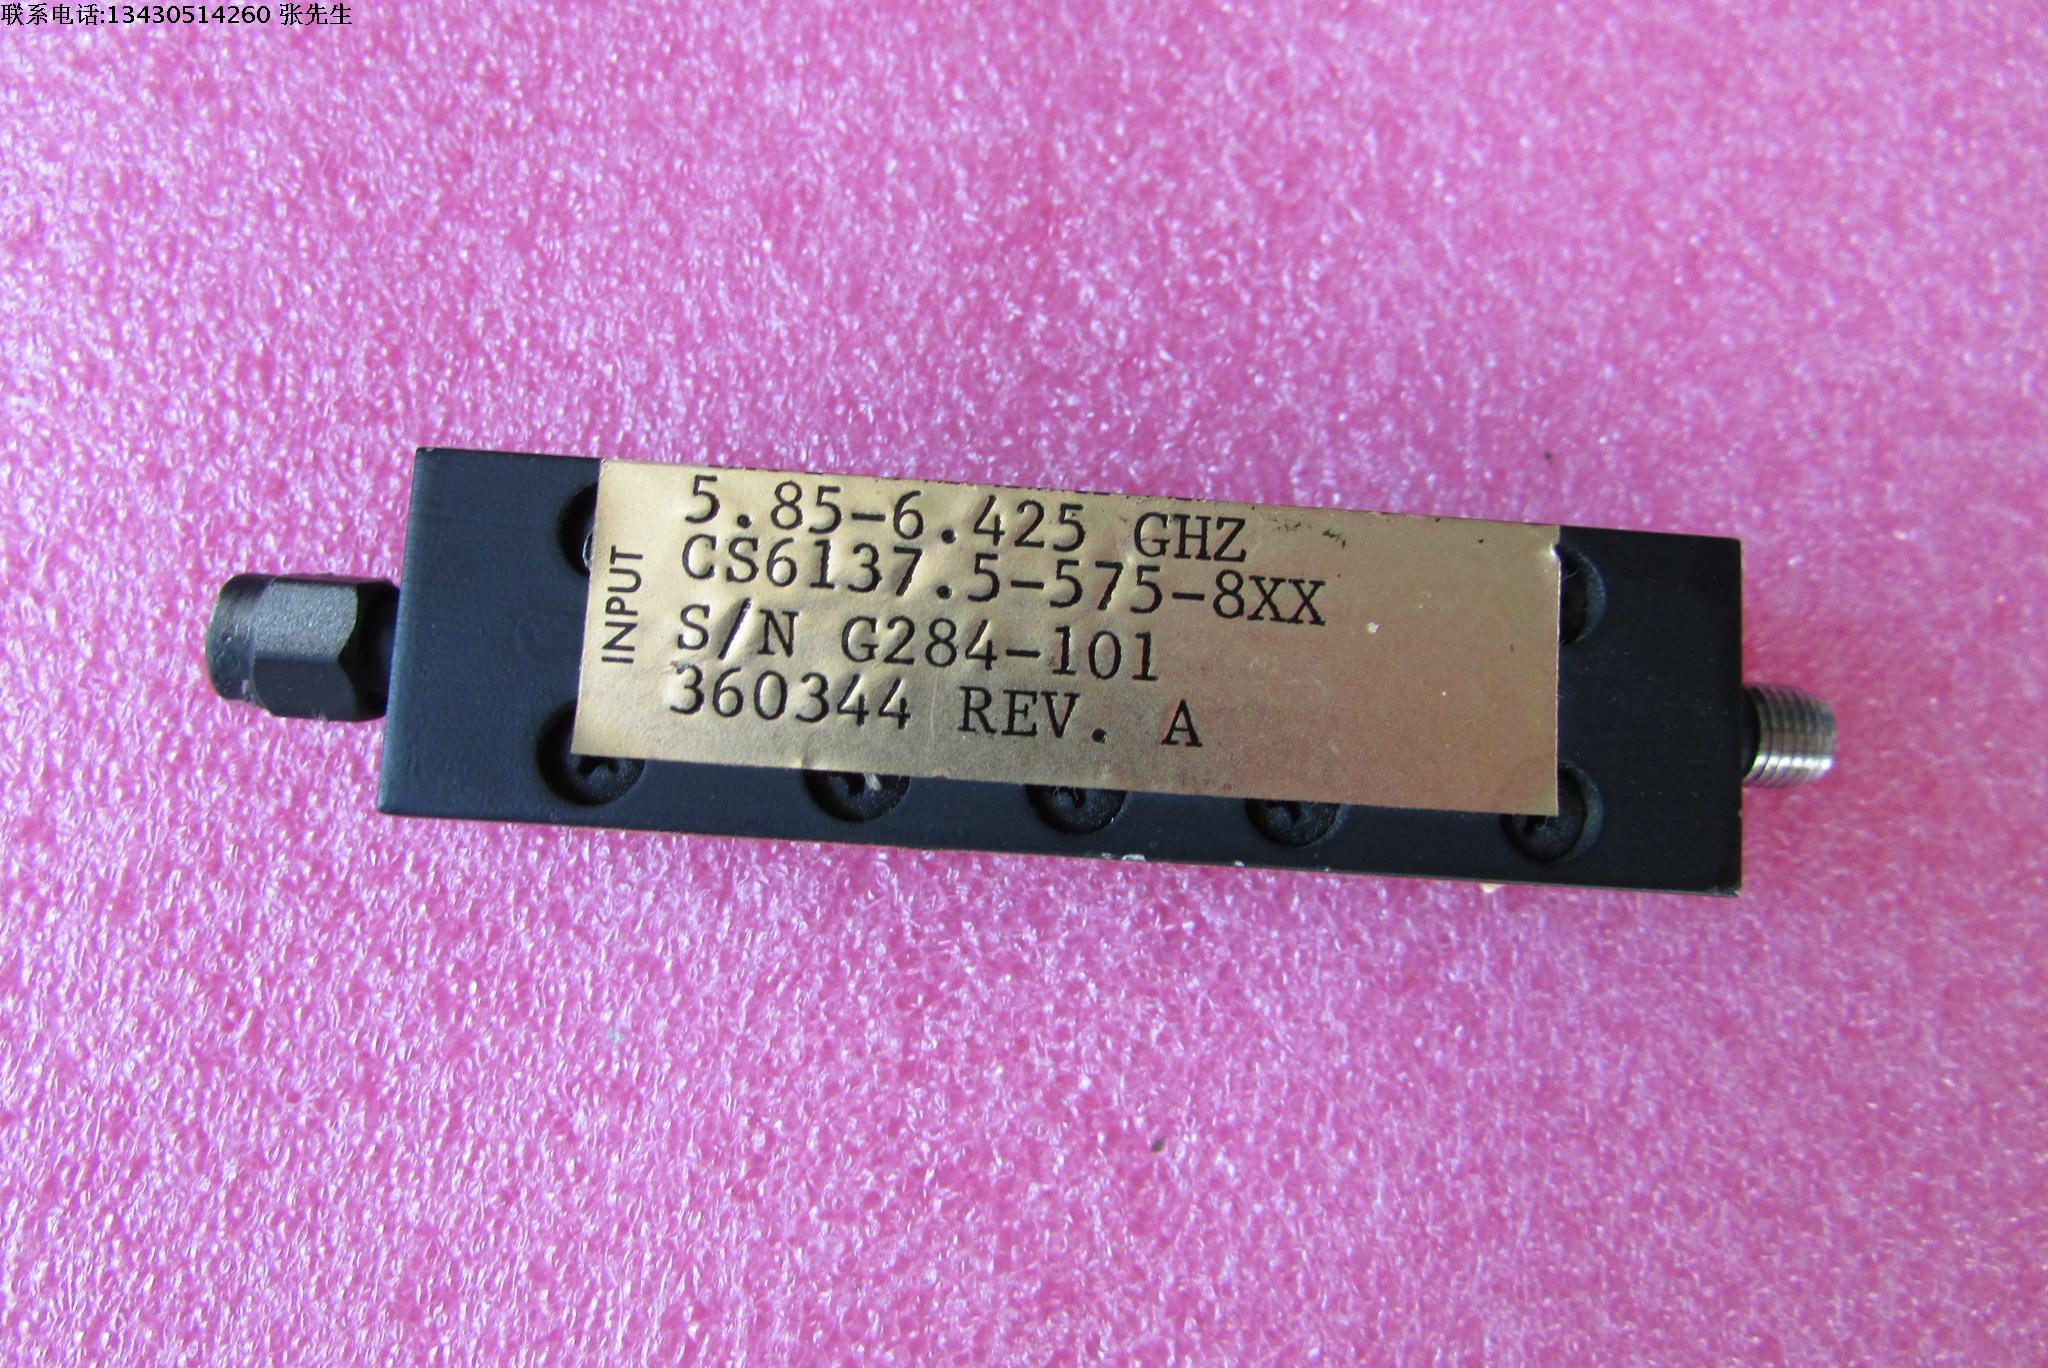 美国进口 DA CS6137.5-575-8XX 6.2GHz SMA母 RF射频微波同轴带通滤波器质量包好，包能用可提供详细测试图品牌：DA型号 CS6137.5-575-8XX中心频率：6.2GHz，带宽:1.1GHz看测试图接头：SMA F